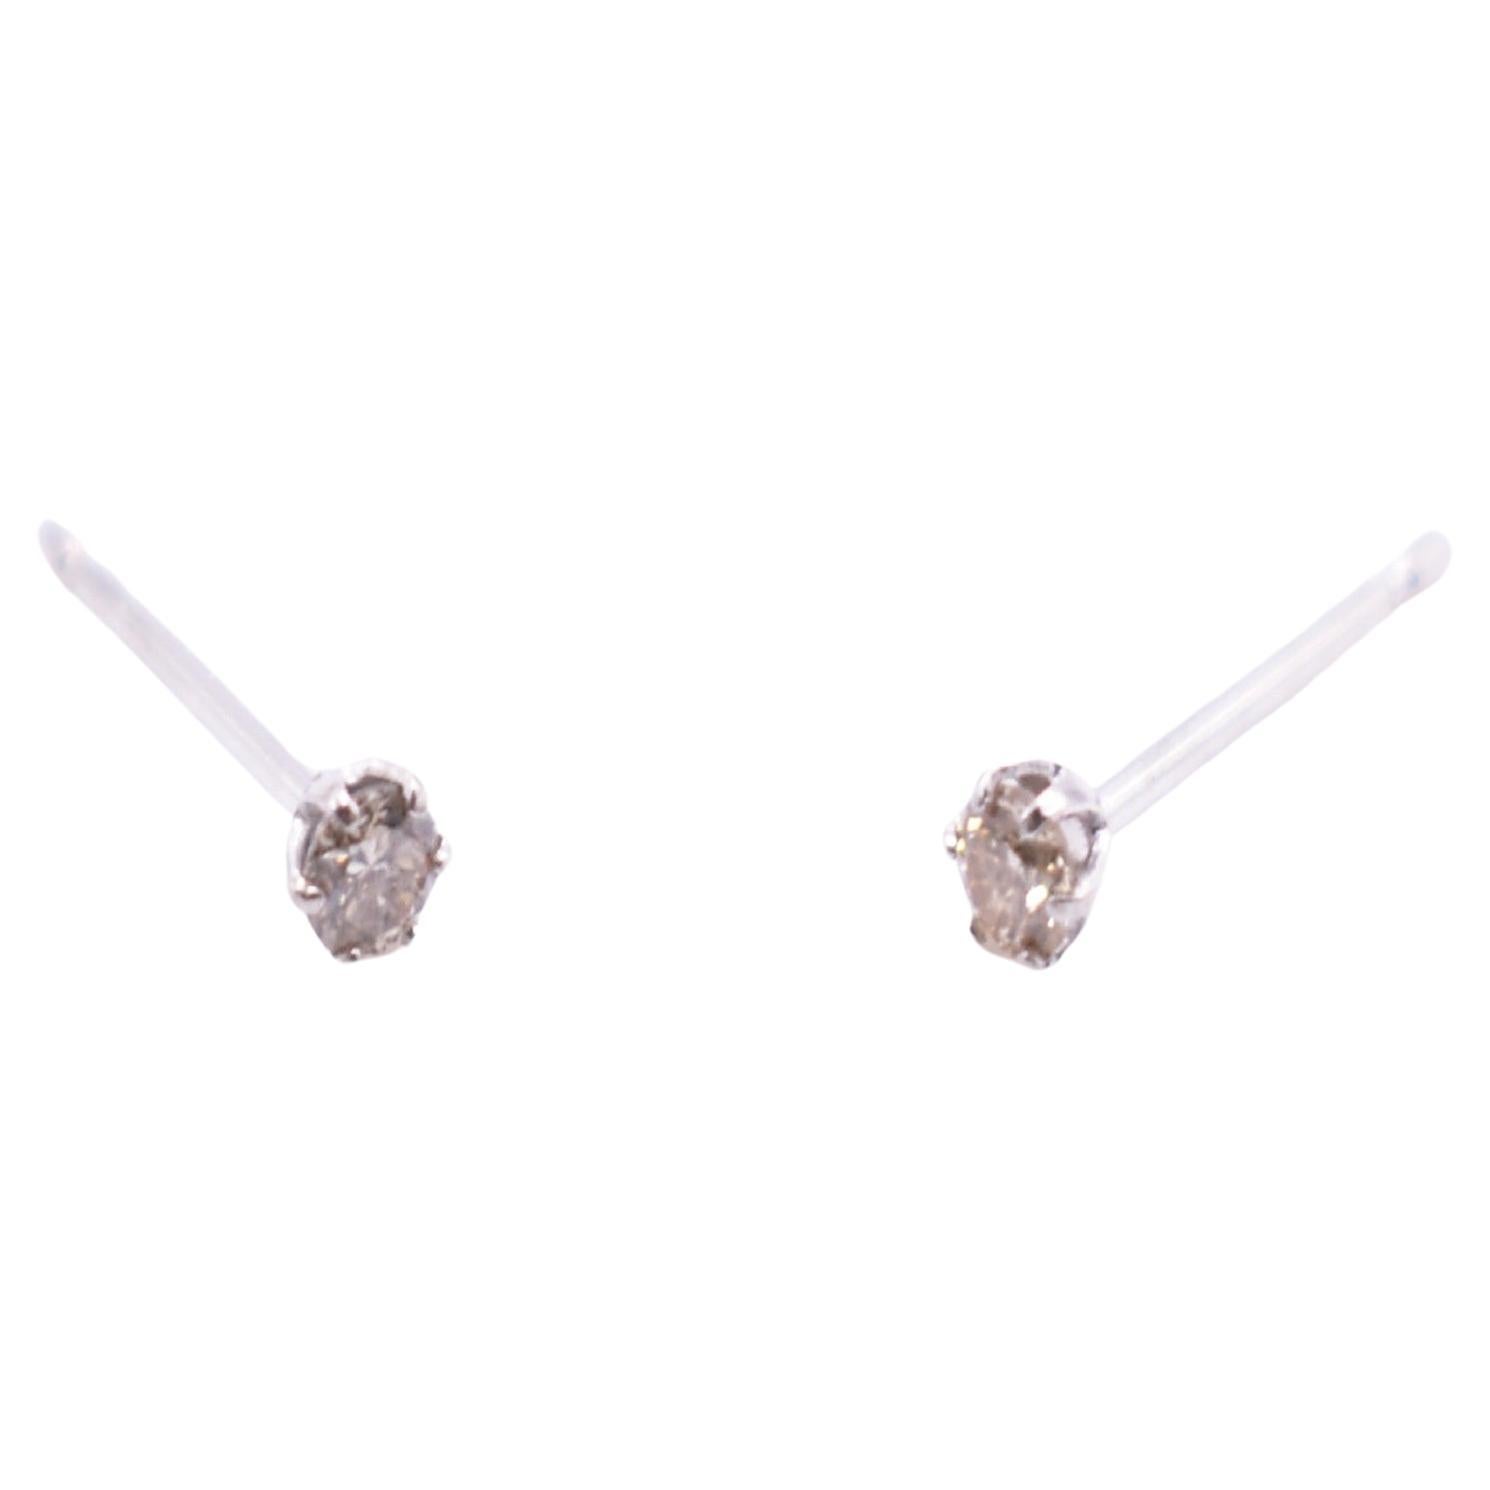 Pair of Platinum Diamond Stud Earrings